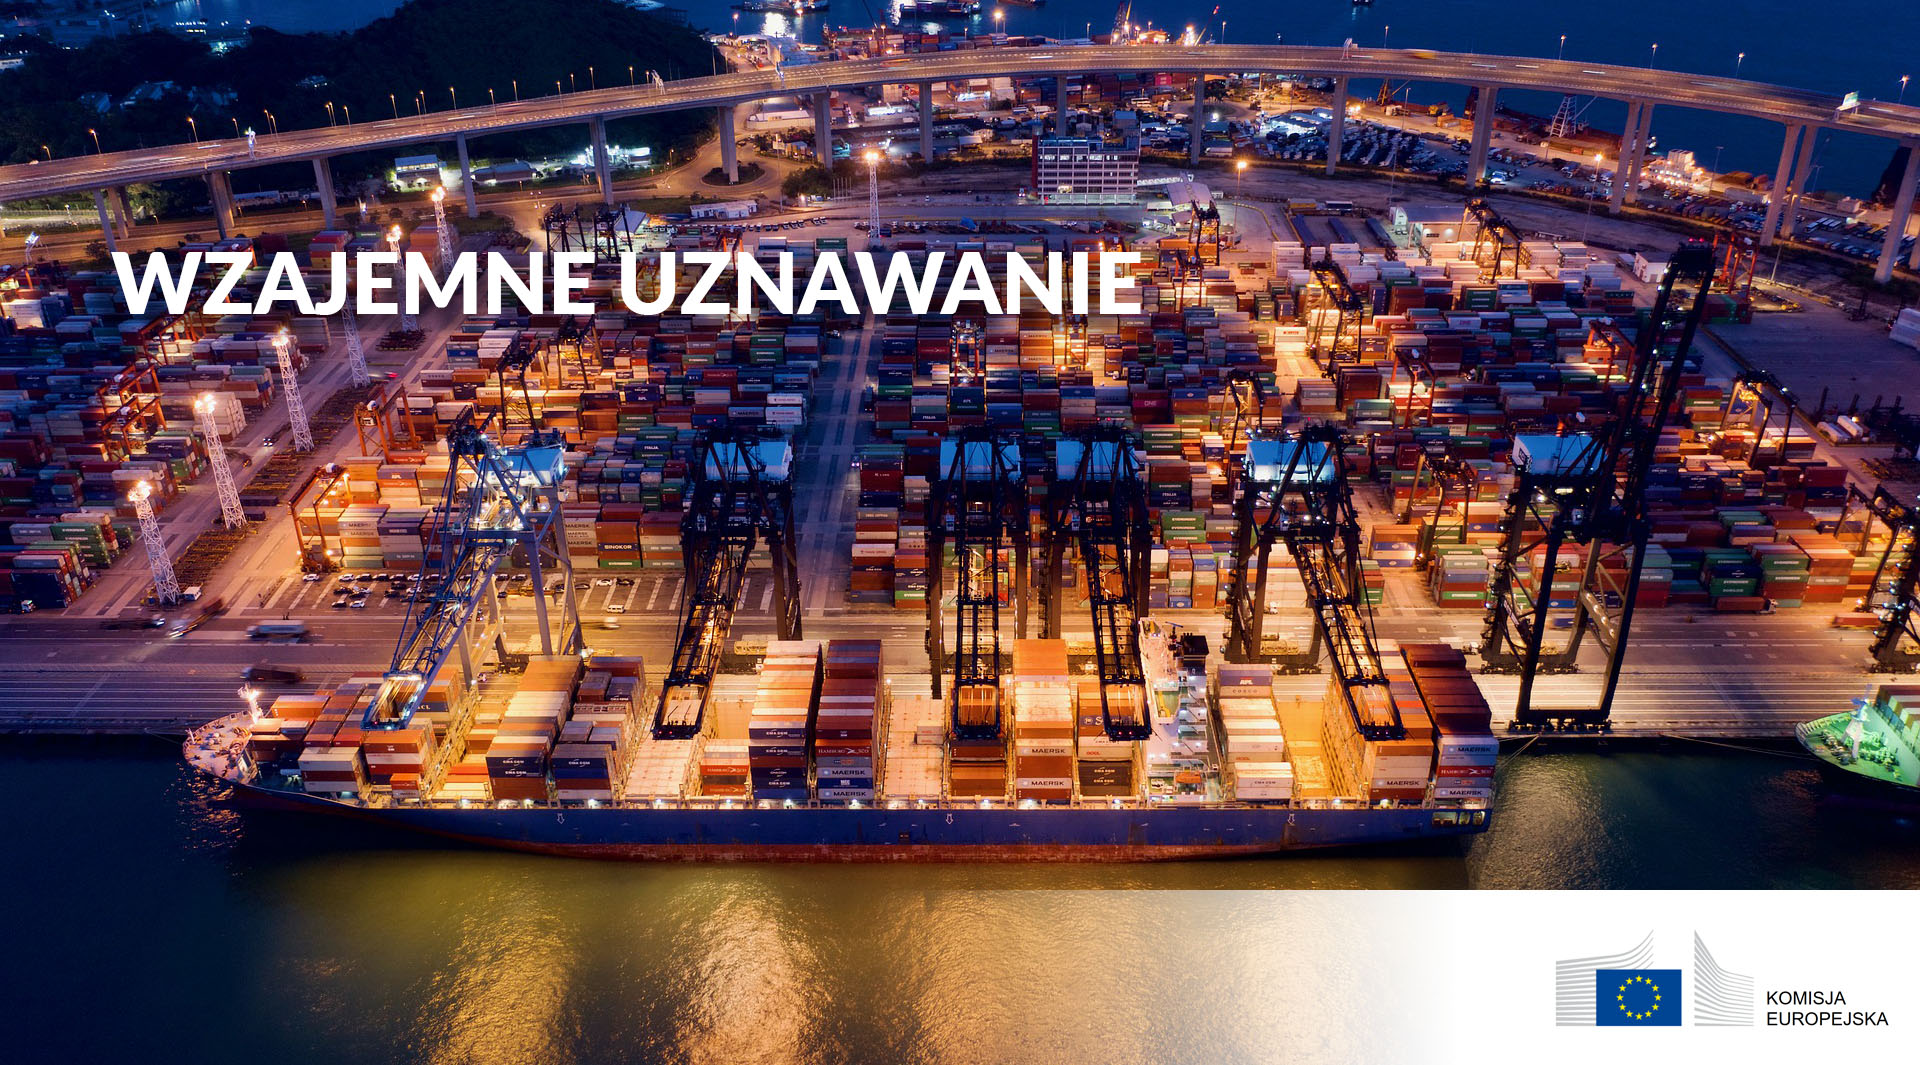 Wzajemne uznawanie towarów i usług w unii europejskiej - zdjęcie portu przeładunkowego z gory: ogromna liczba kontenerów.